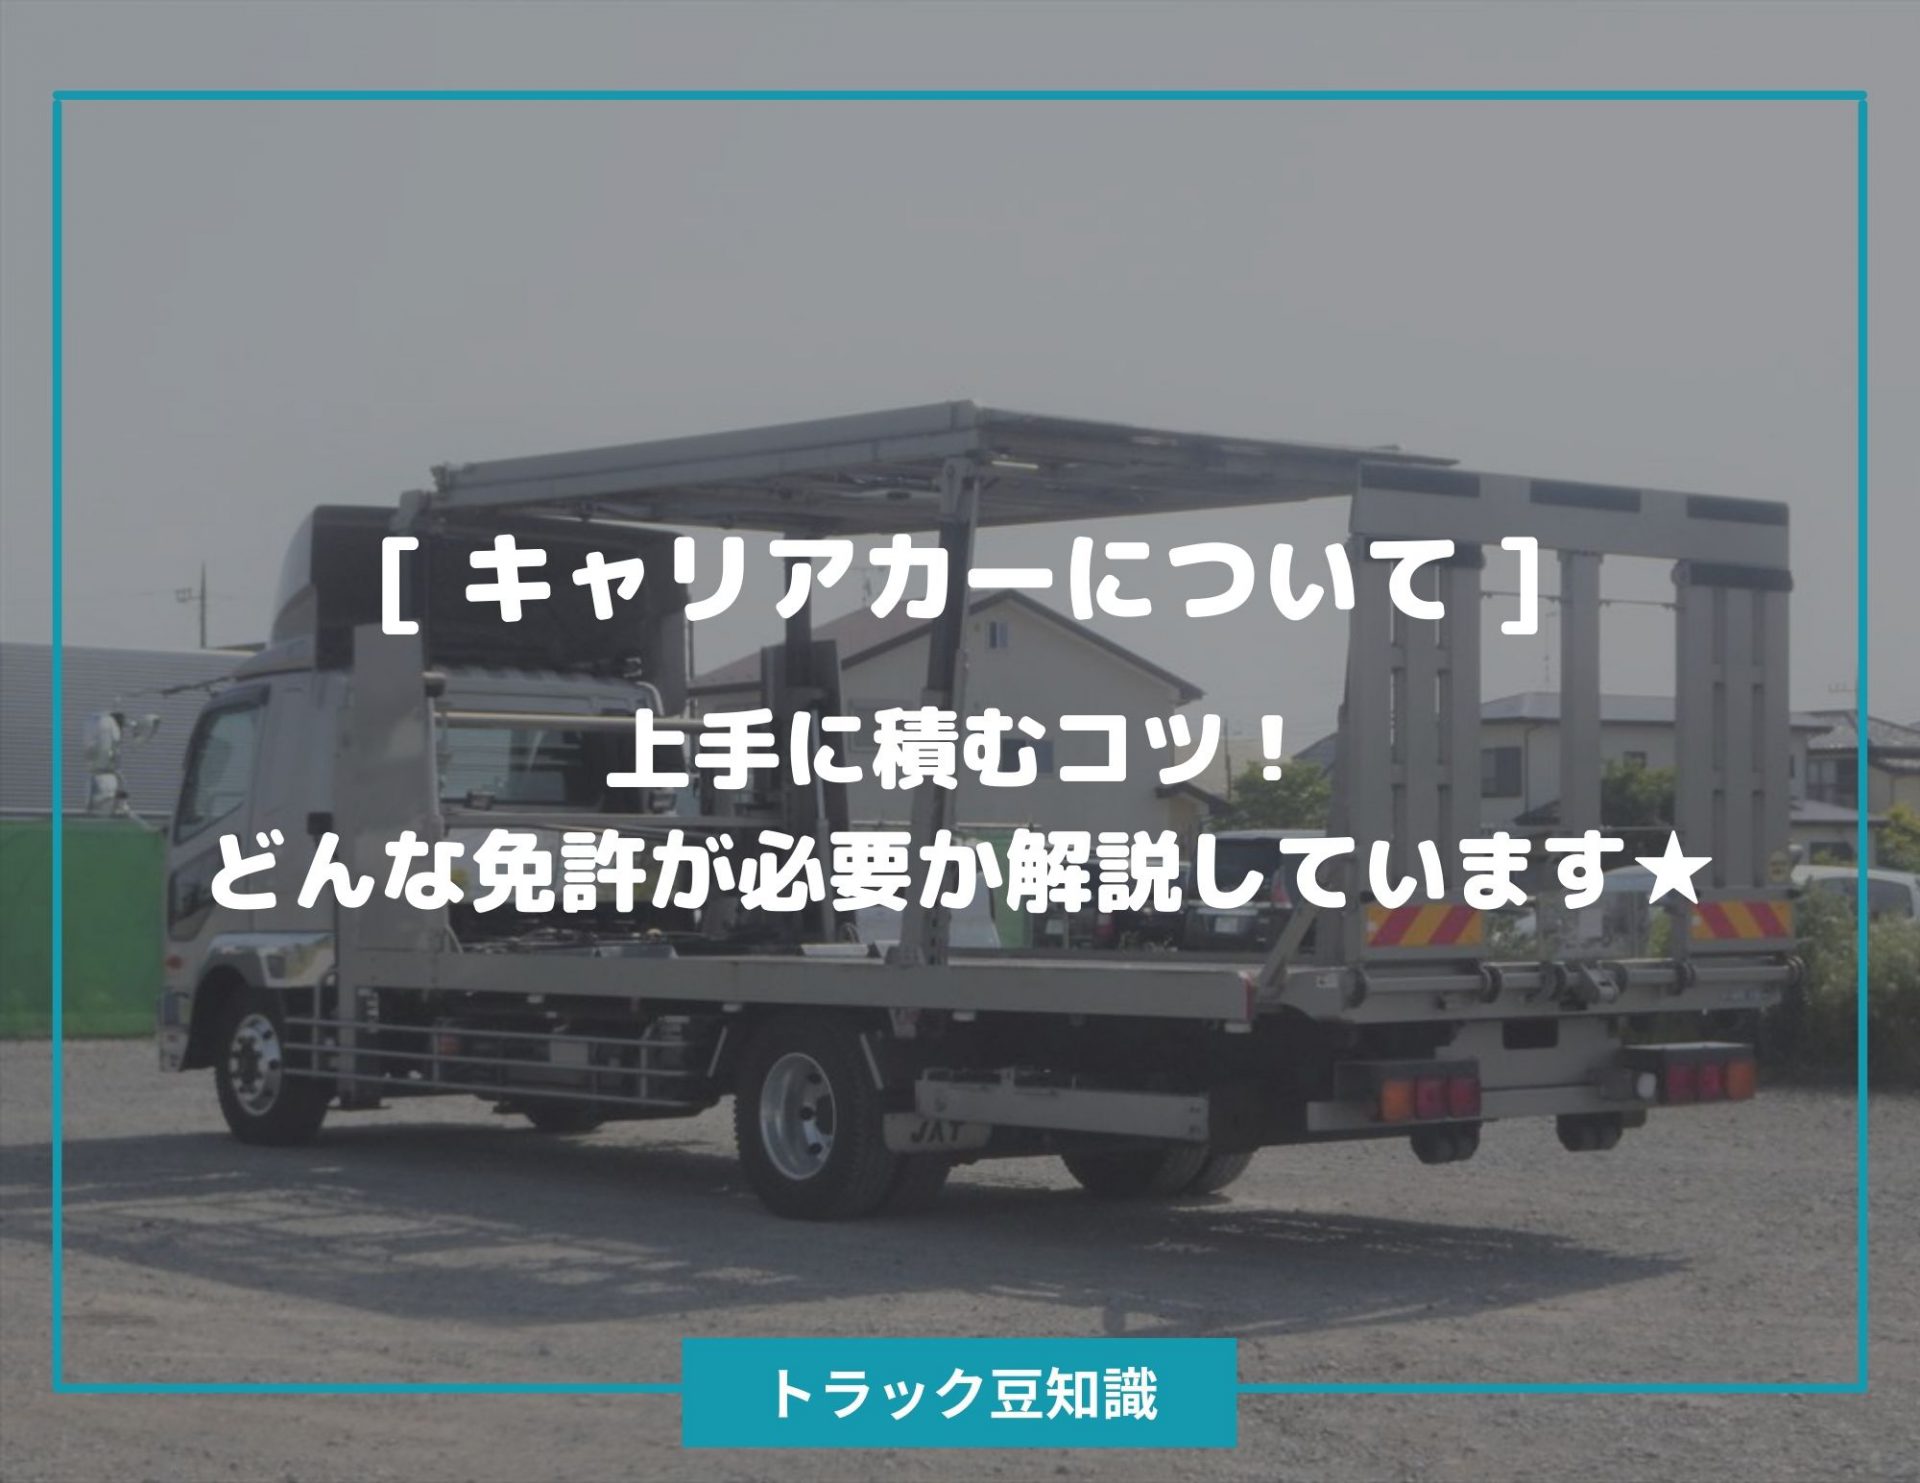 8月 21 中古トラックのヨシノ自動車